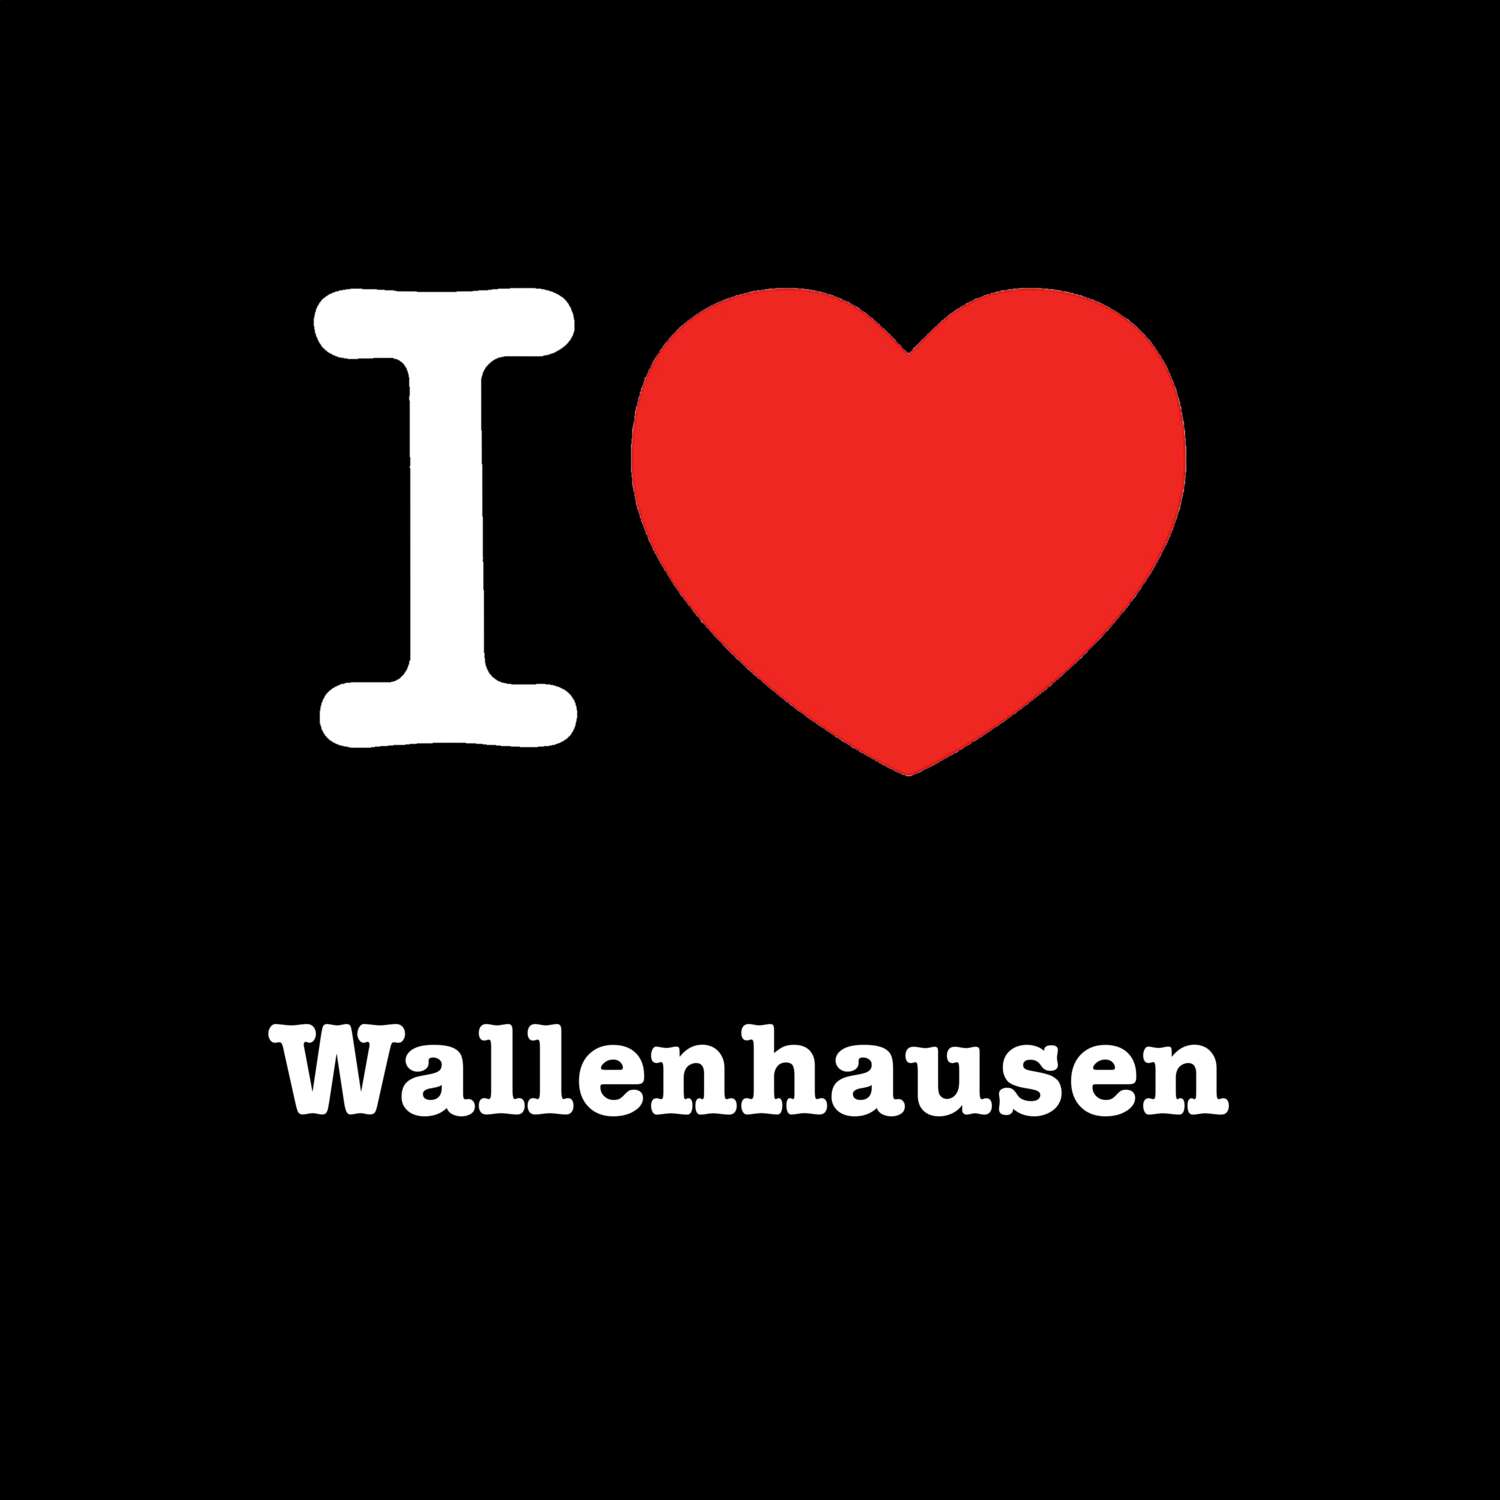 Wallenhausen T-Shirt »I love«